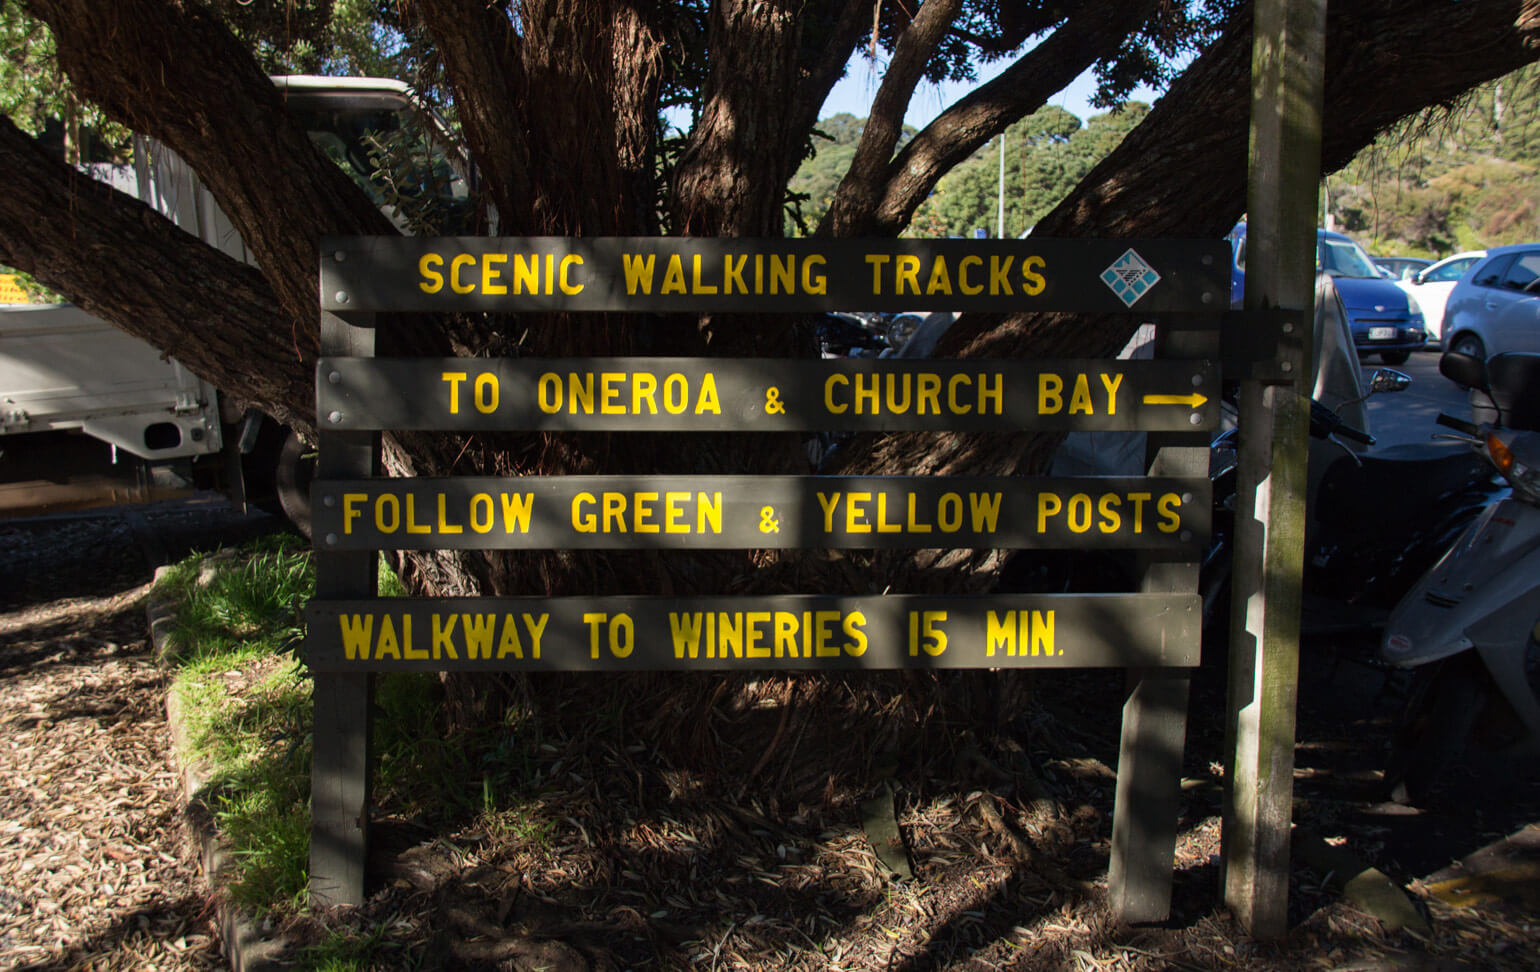 Walking tracks sign in Matiatia, Waiheke Island